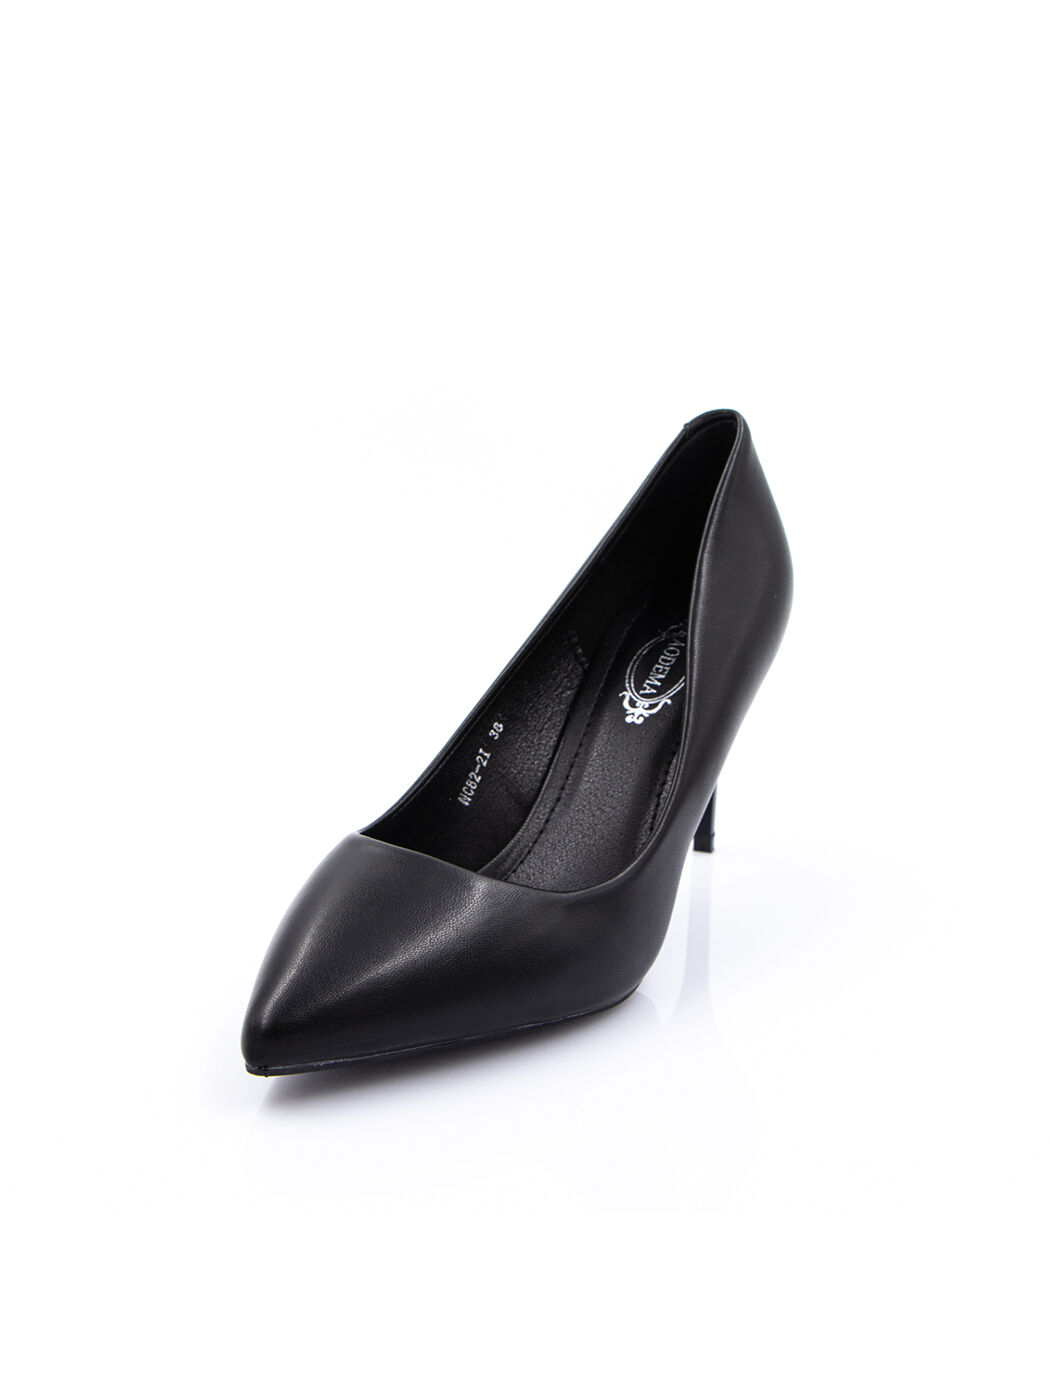 Туфли женские черные экокожа каблук шпилька демисезон от производителя IM вид 0